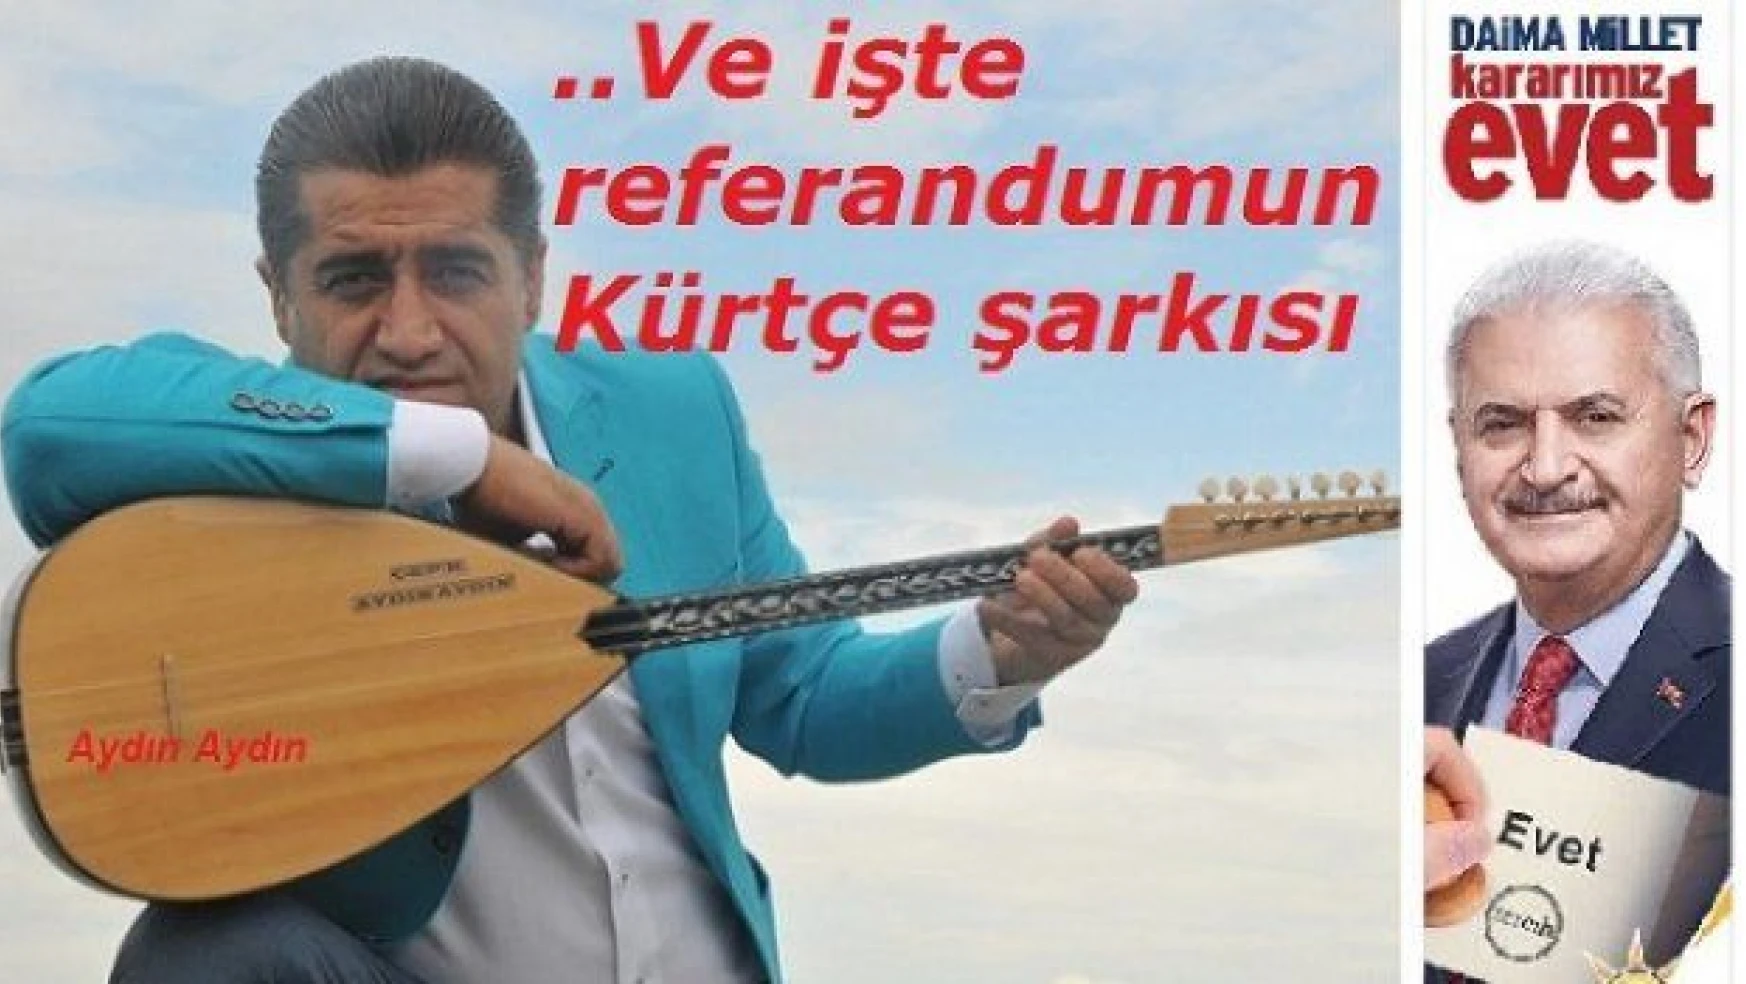 Referandumun Kürtçe şarkısı Aydın Aydın'dan